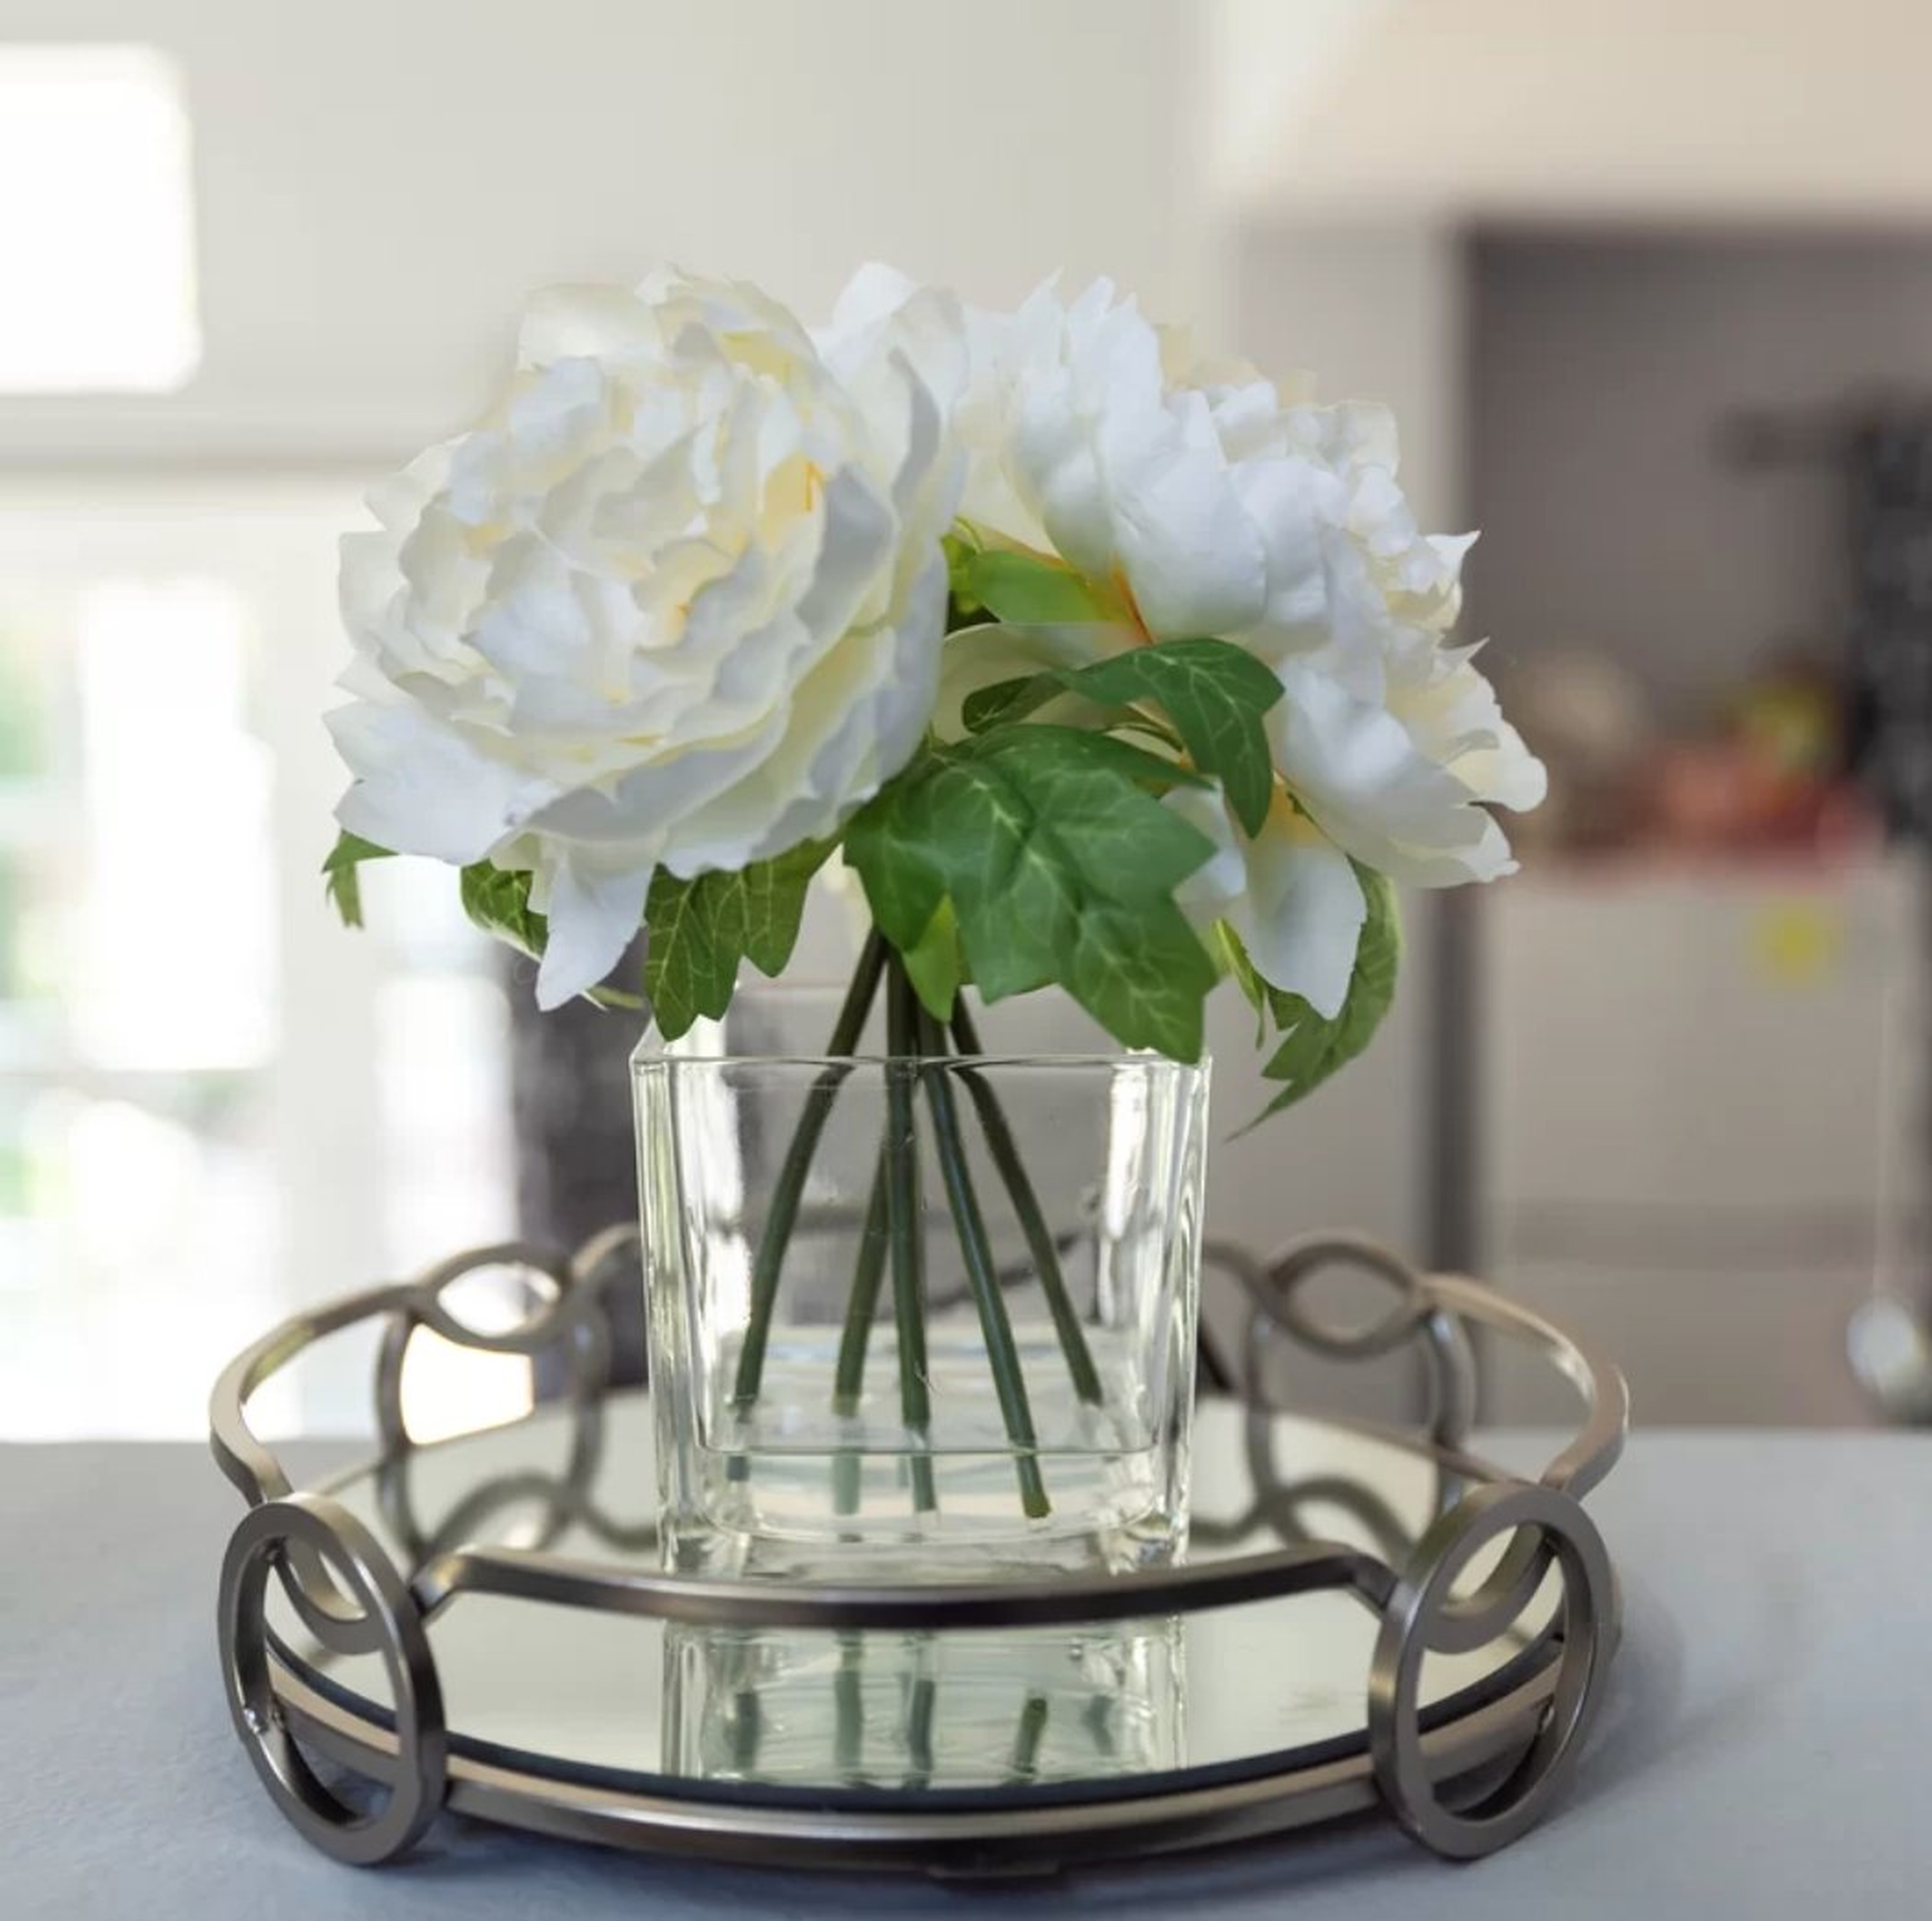 Silk Peonie Floral Arrangement and Centerpiece in Vase-Cream White - Wayfair